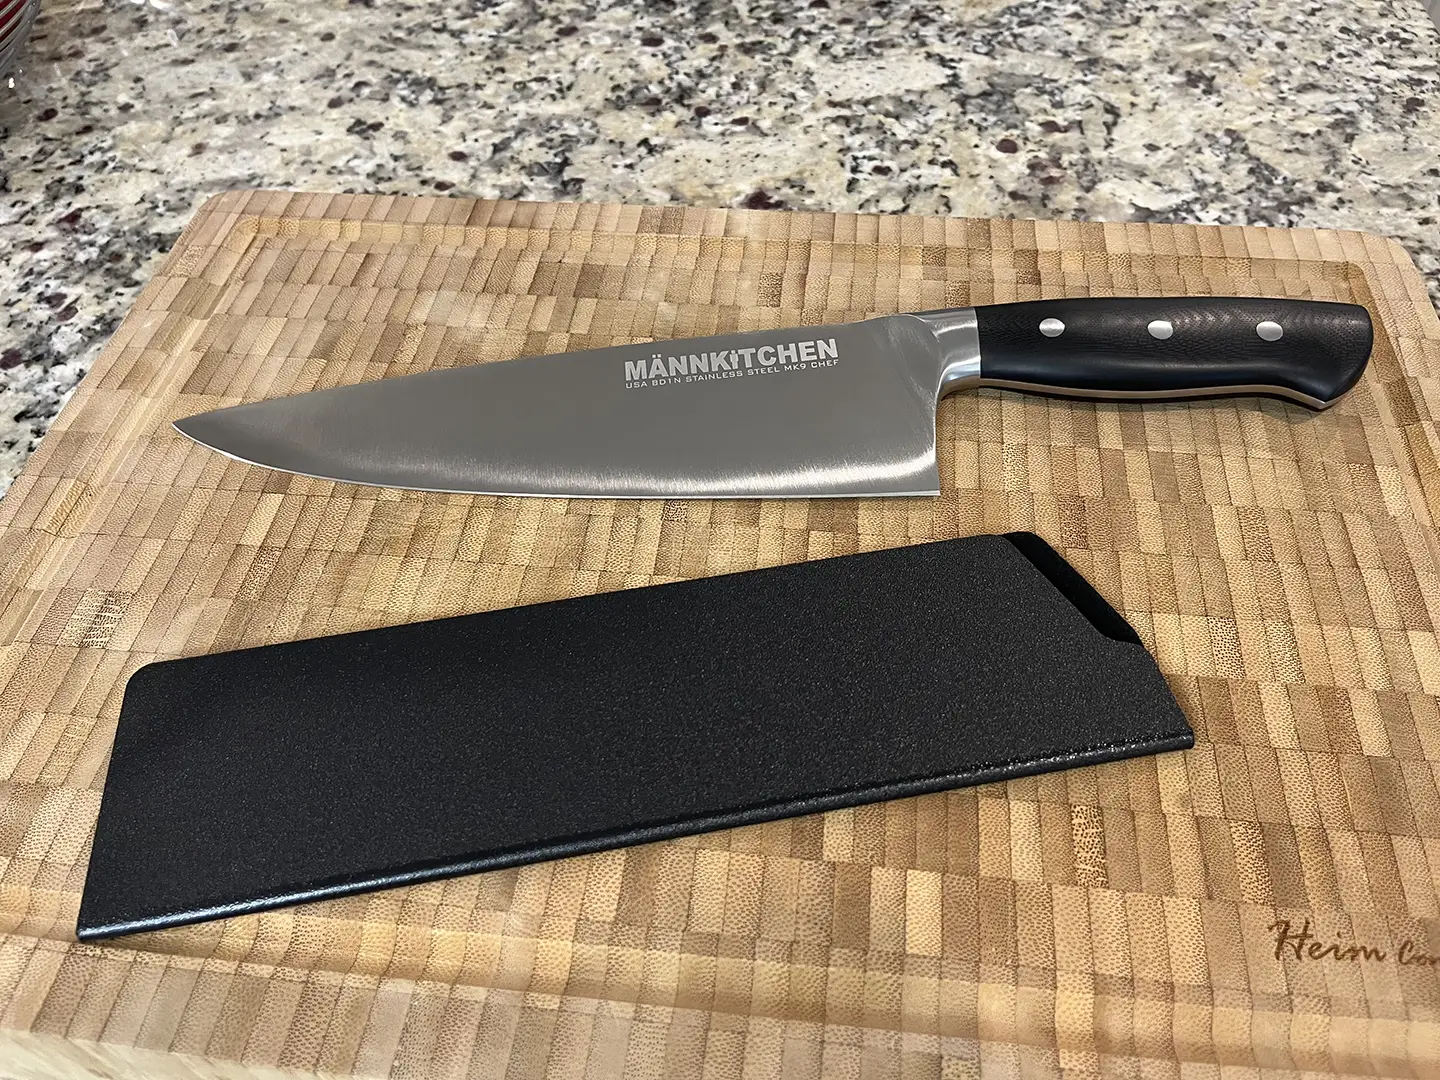 https://steelbluekitchen.com/wp-content/uploads/2023/01/Mannkitchen-MK9-Chef-Knife-Sheath.webp